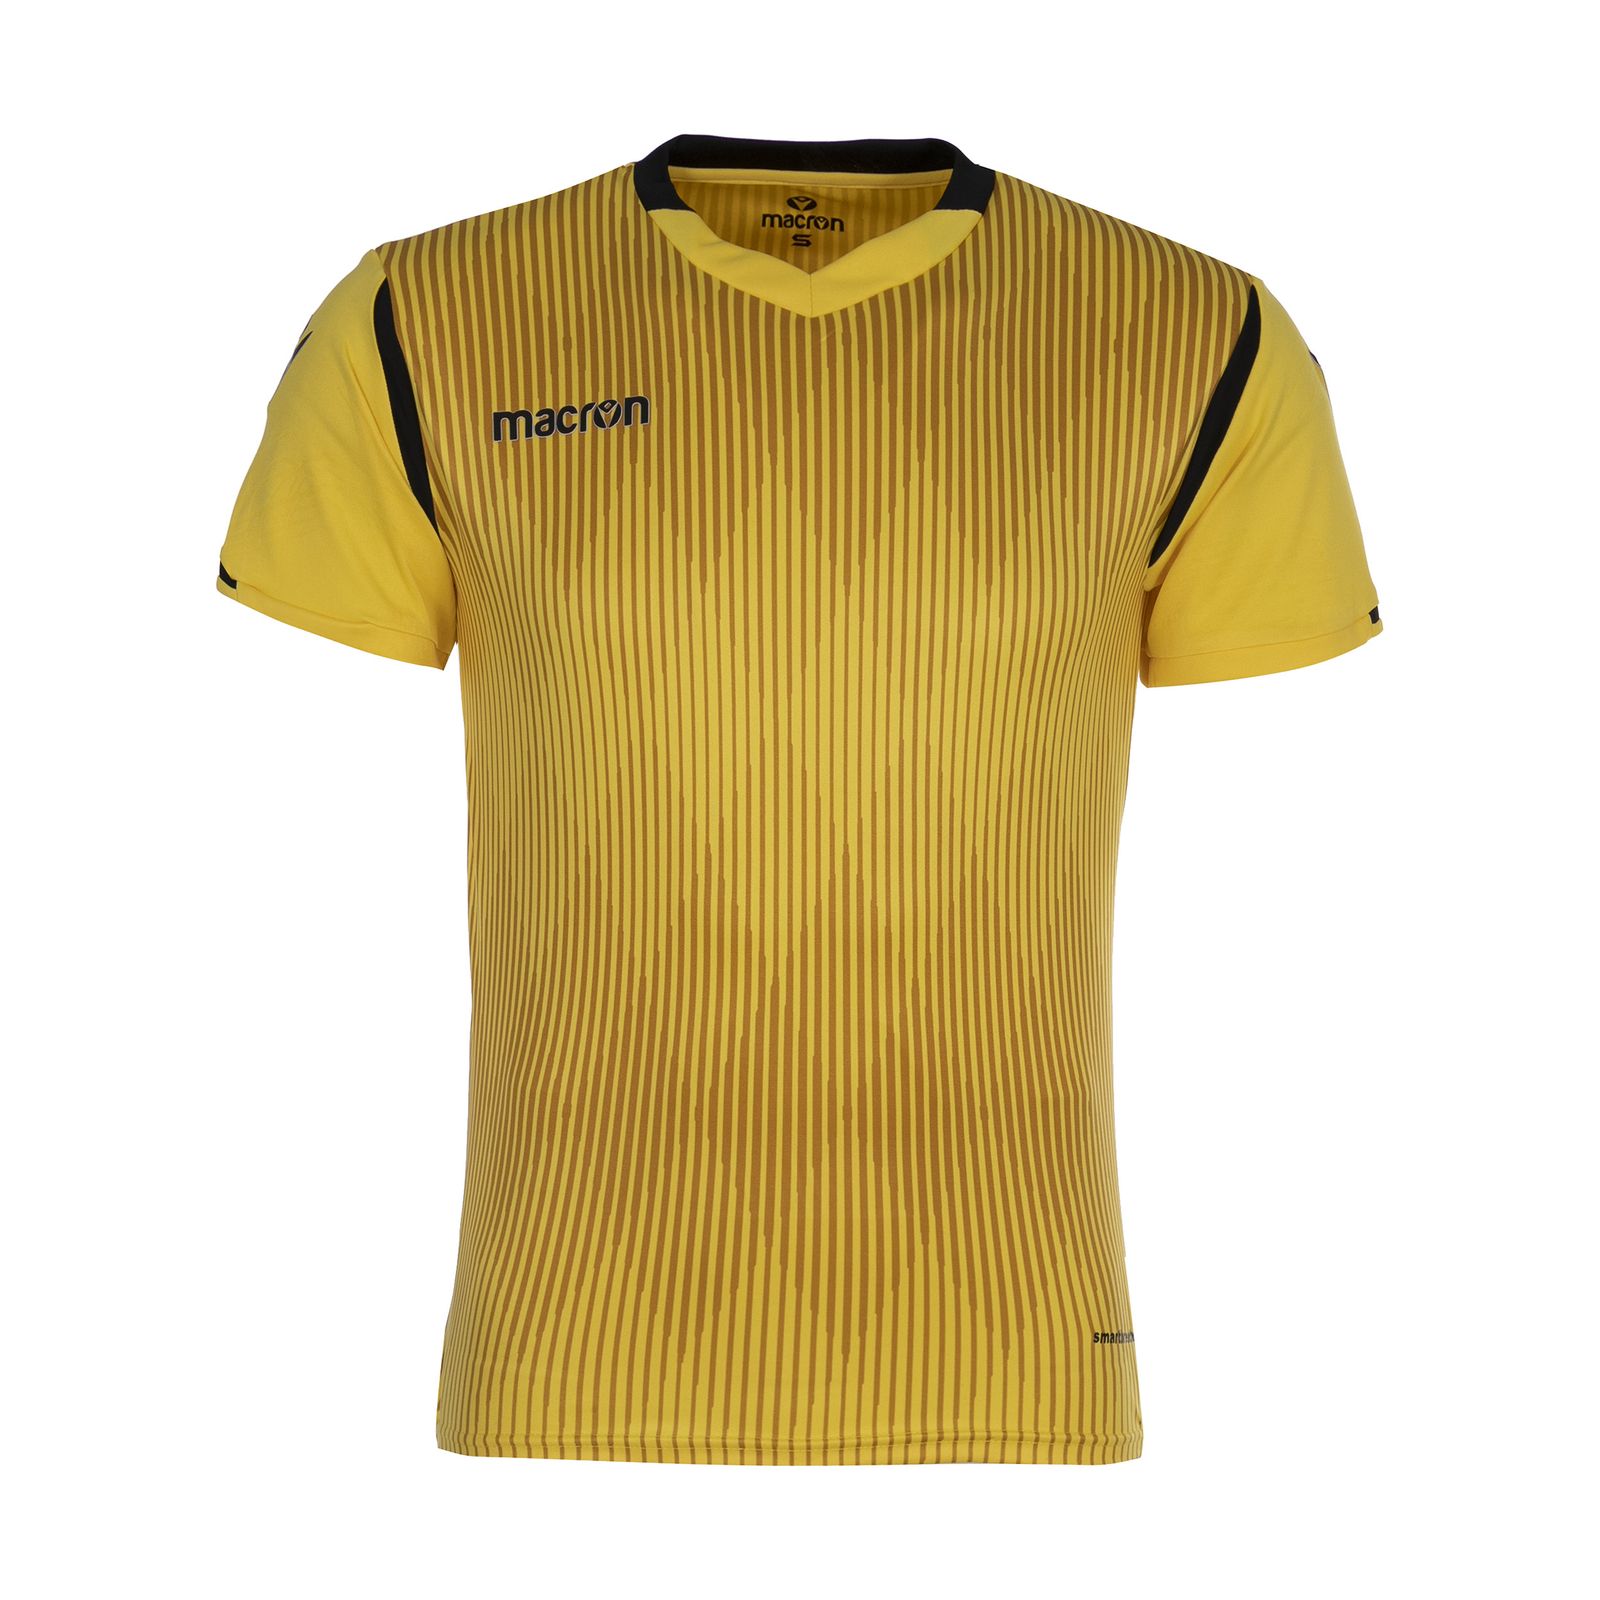  ست تی شرت و شلوارک ورزشی مردانه مکرون مدل فارست رنگ زرد -  - 4